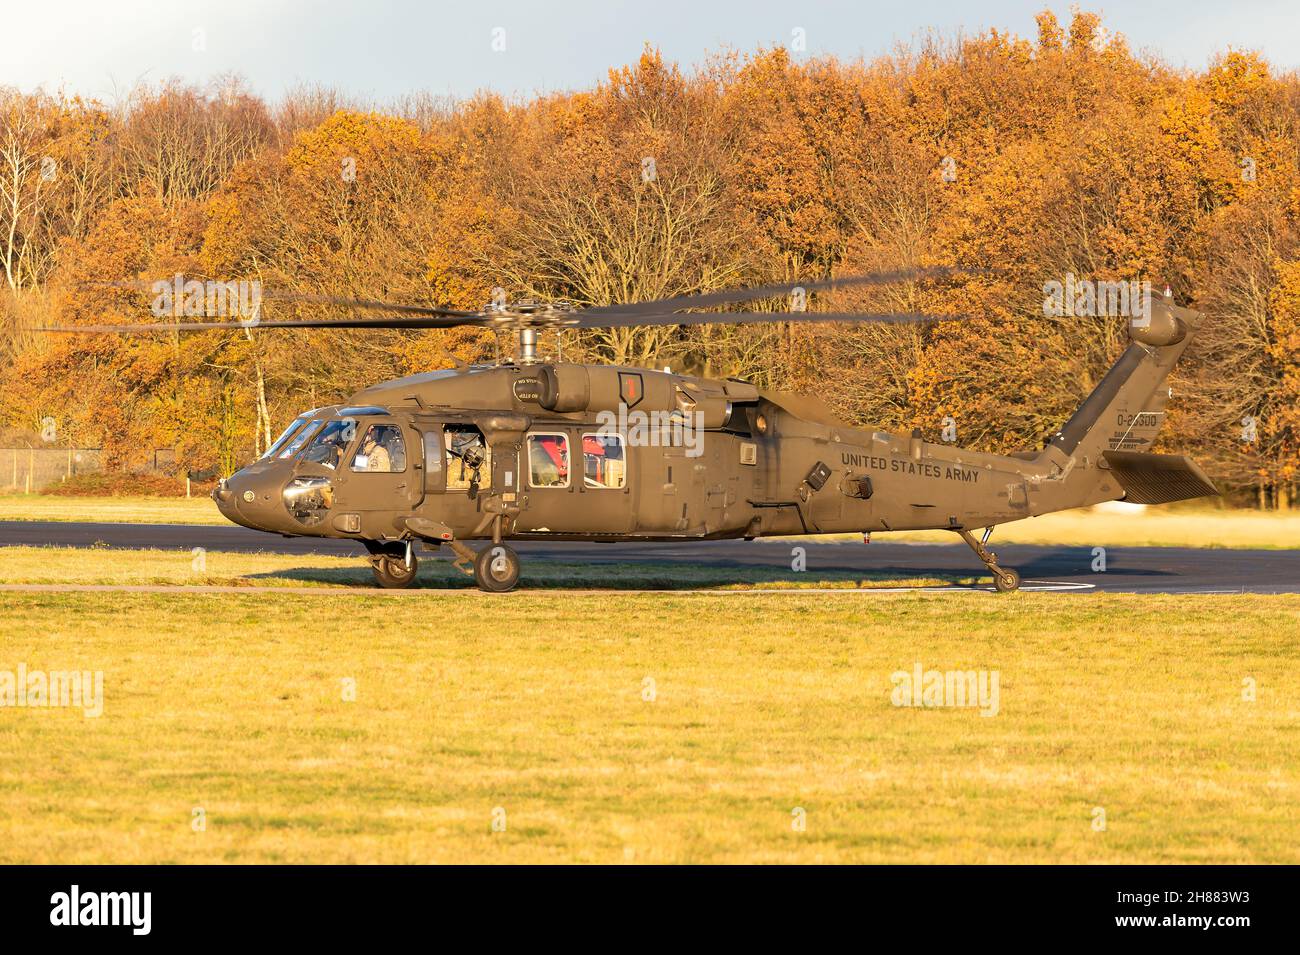 Un hélicoptère utilitaire bimoteur Sikorsky UH-60 Black Hawk de l'armée américaine à la base aérienne de Gilze-Rijen, aux pays-Bas. Banque D'Images